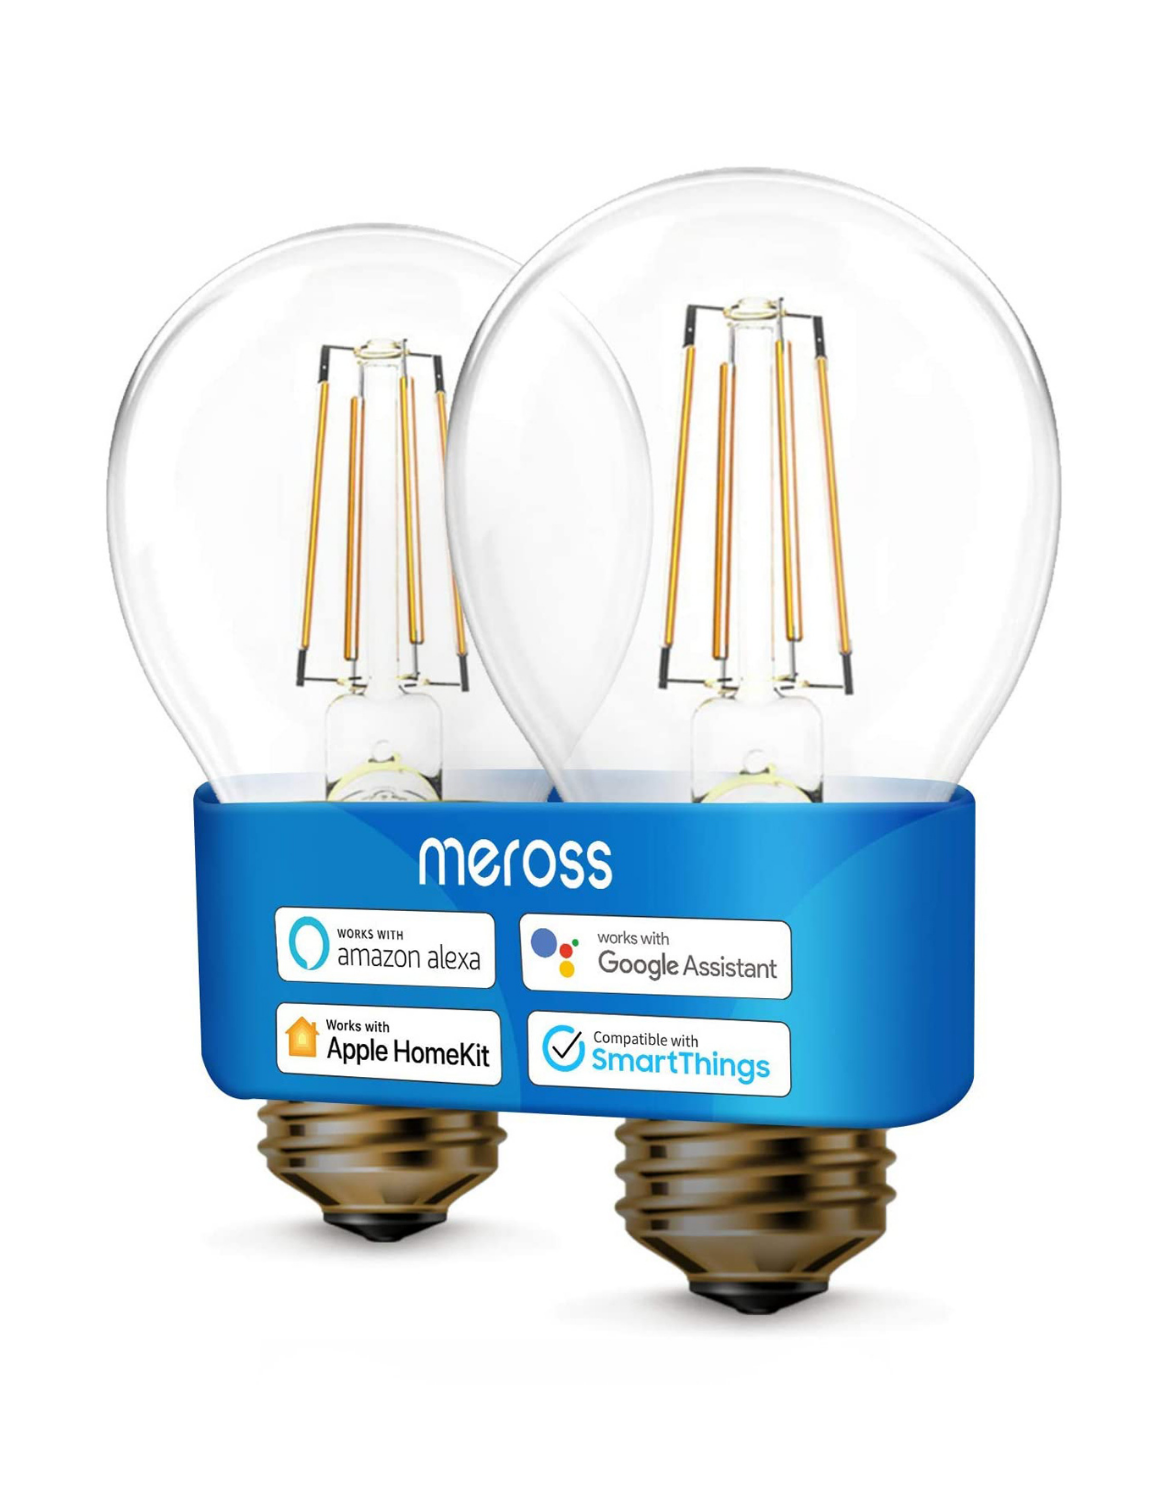 meross Smart Wi-Fi Light Bulb voor HomeKit Wifi La de segunda mano por 29  EUR en Elx/Elche en WALLAPOP